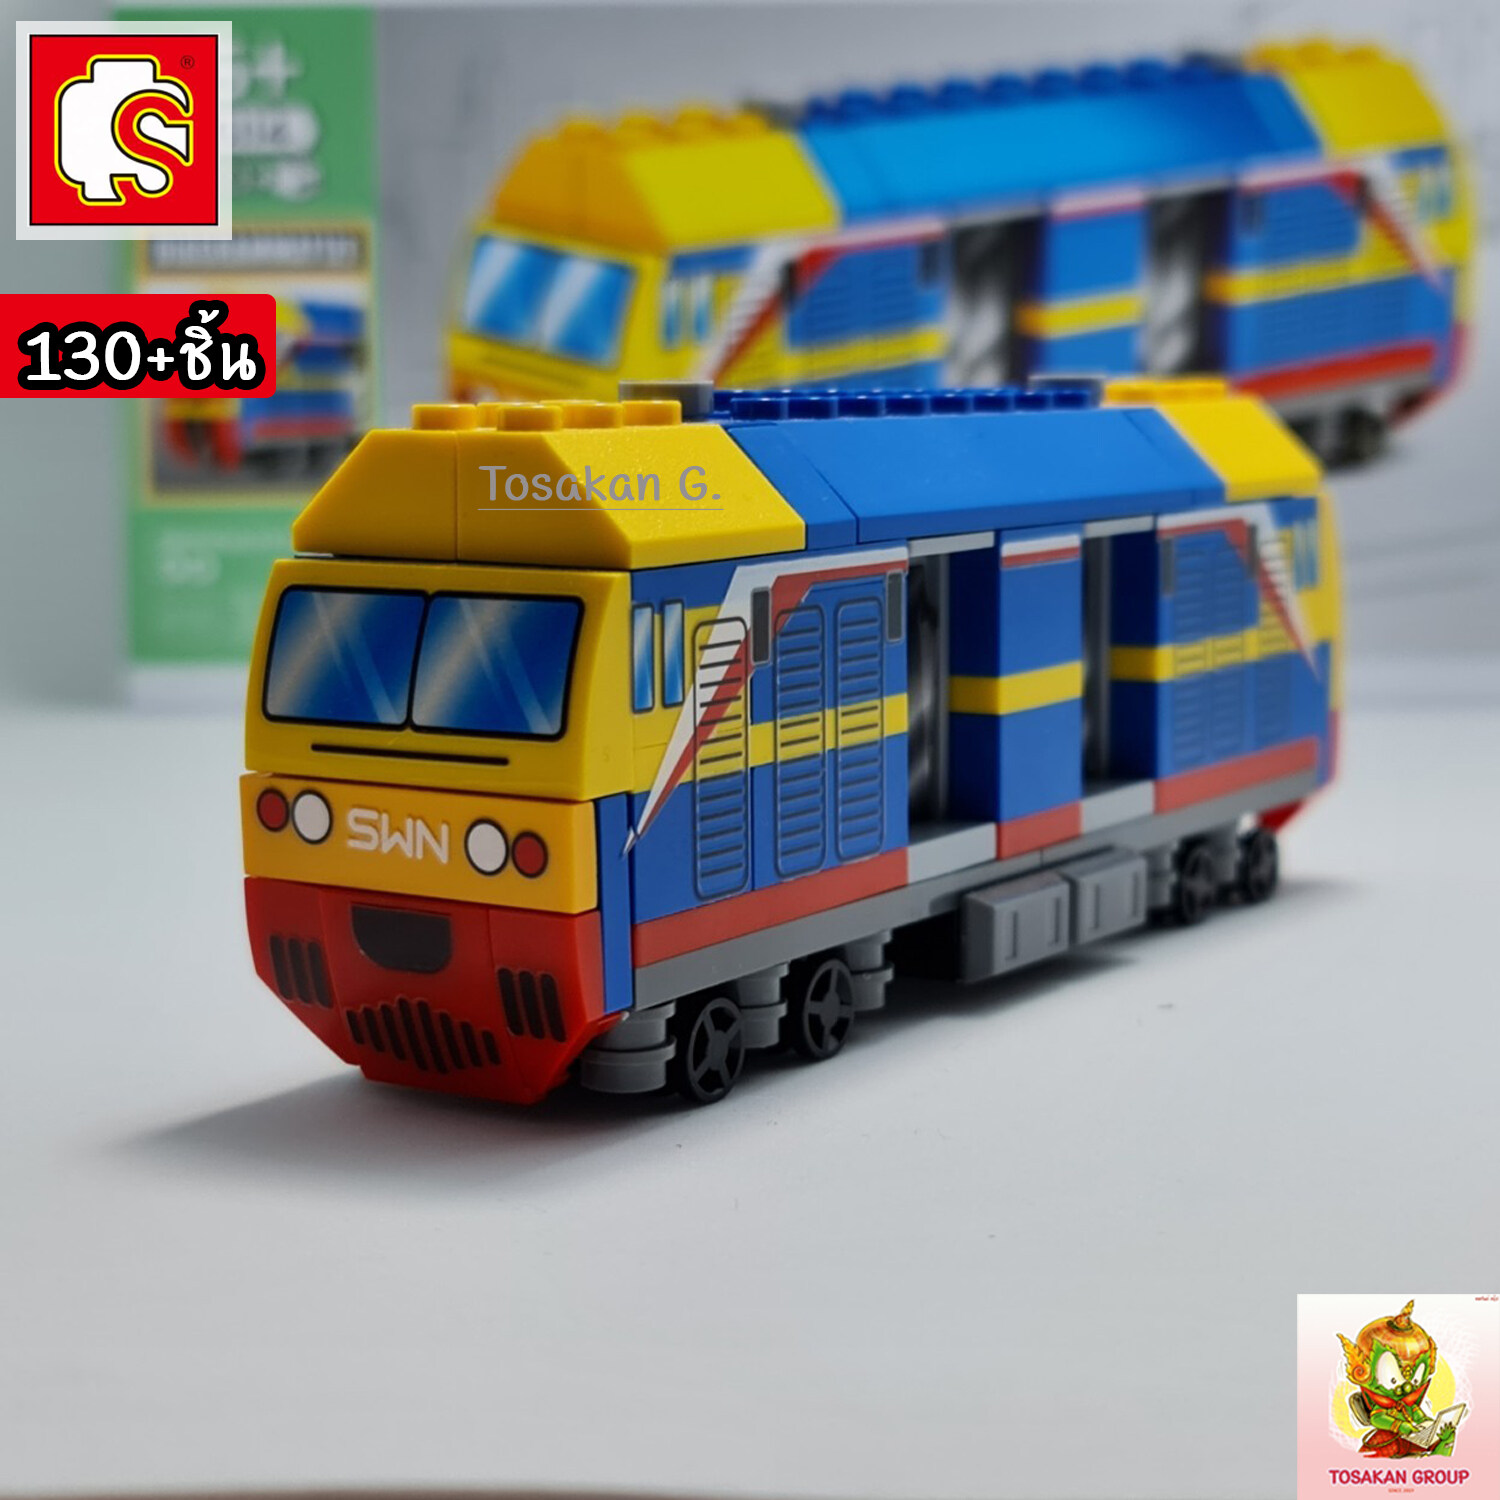 ตัวต่อเลโก้ Sembo Block ยานพาหนะ ไทยสไตล์ ของเล่น ของสะสม ตั้งโชว์ เสริมทักษะ สมาธิ กิจกรรมยามว่างในครอบครัว (สินค้าพร้อมส่ง) สี รถไปรษณีย์ไทย สี รถไปรษณีย์ไทย